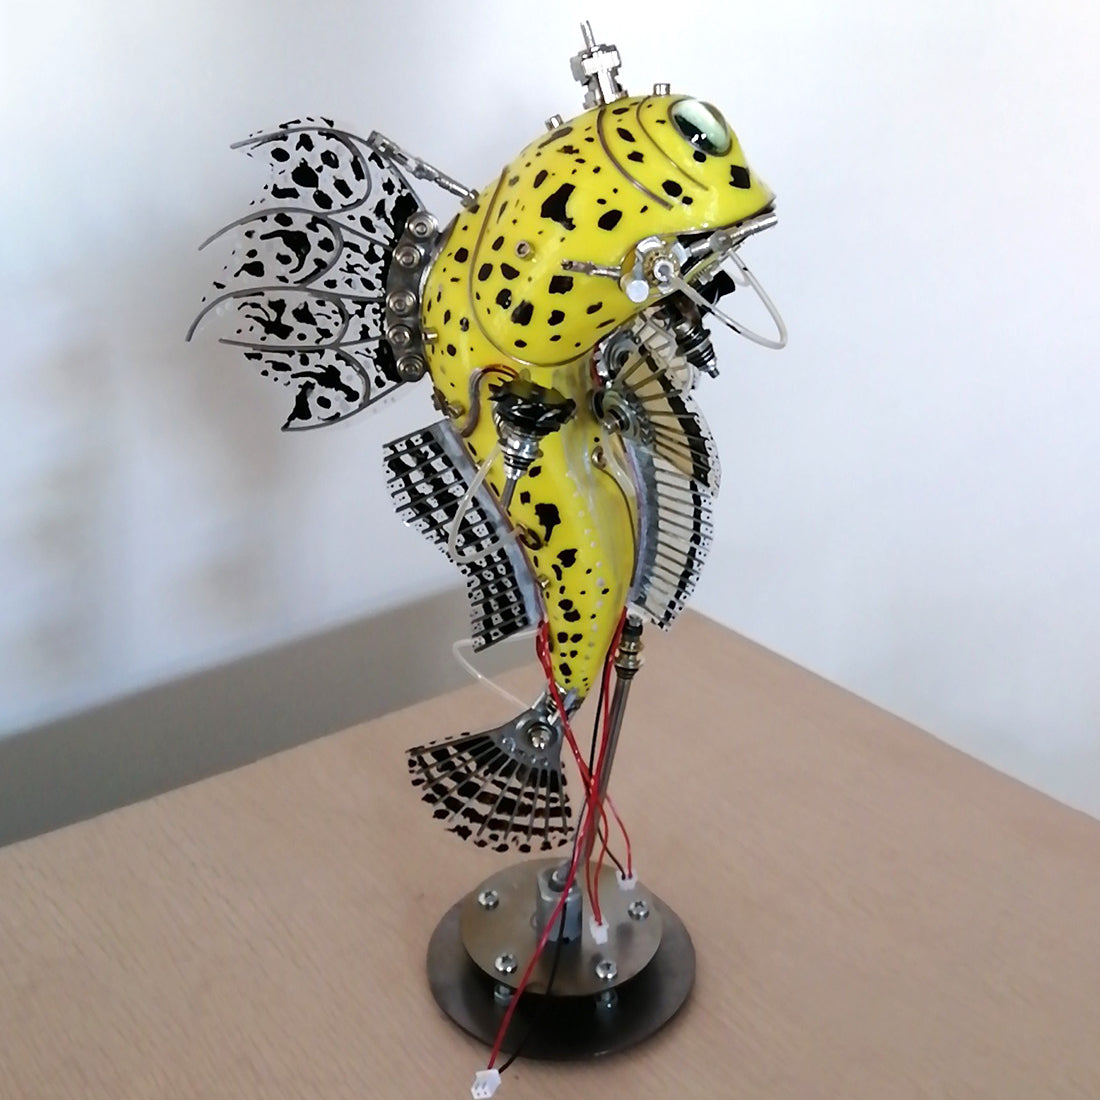 Steampunk  Metal Yellow Fish Sculpture Model Kits 3D Handmade Assembled Art Crafts